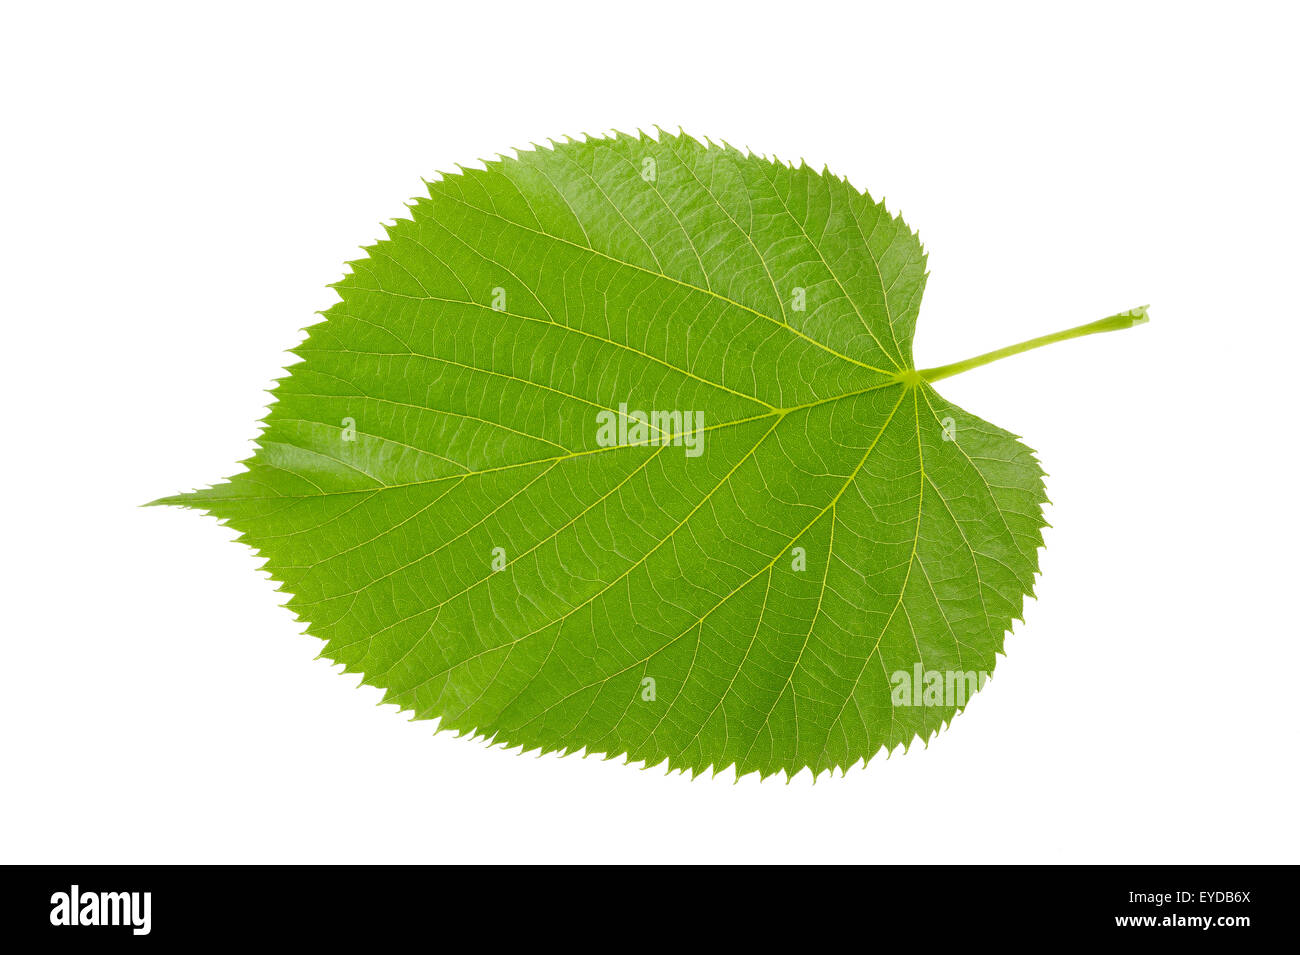 Linden leaf isolated on white background Stock Photo